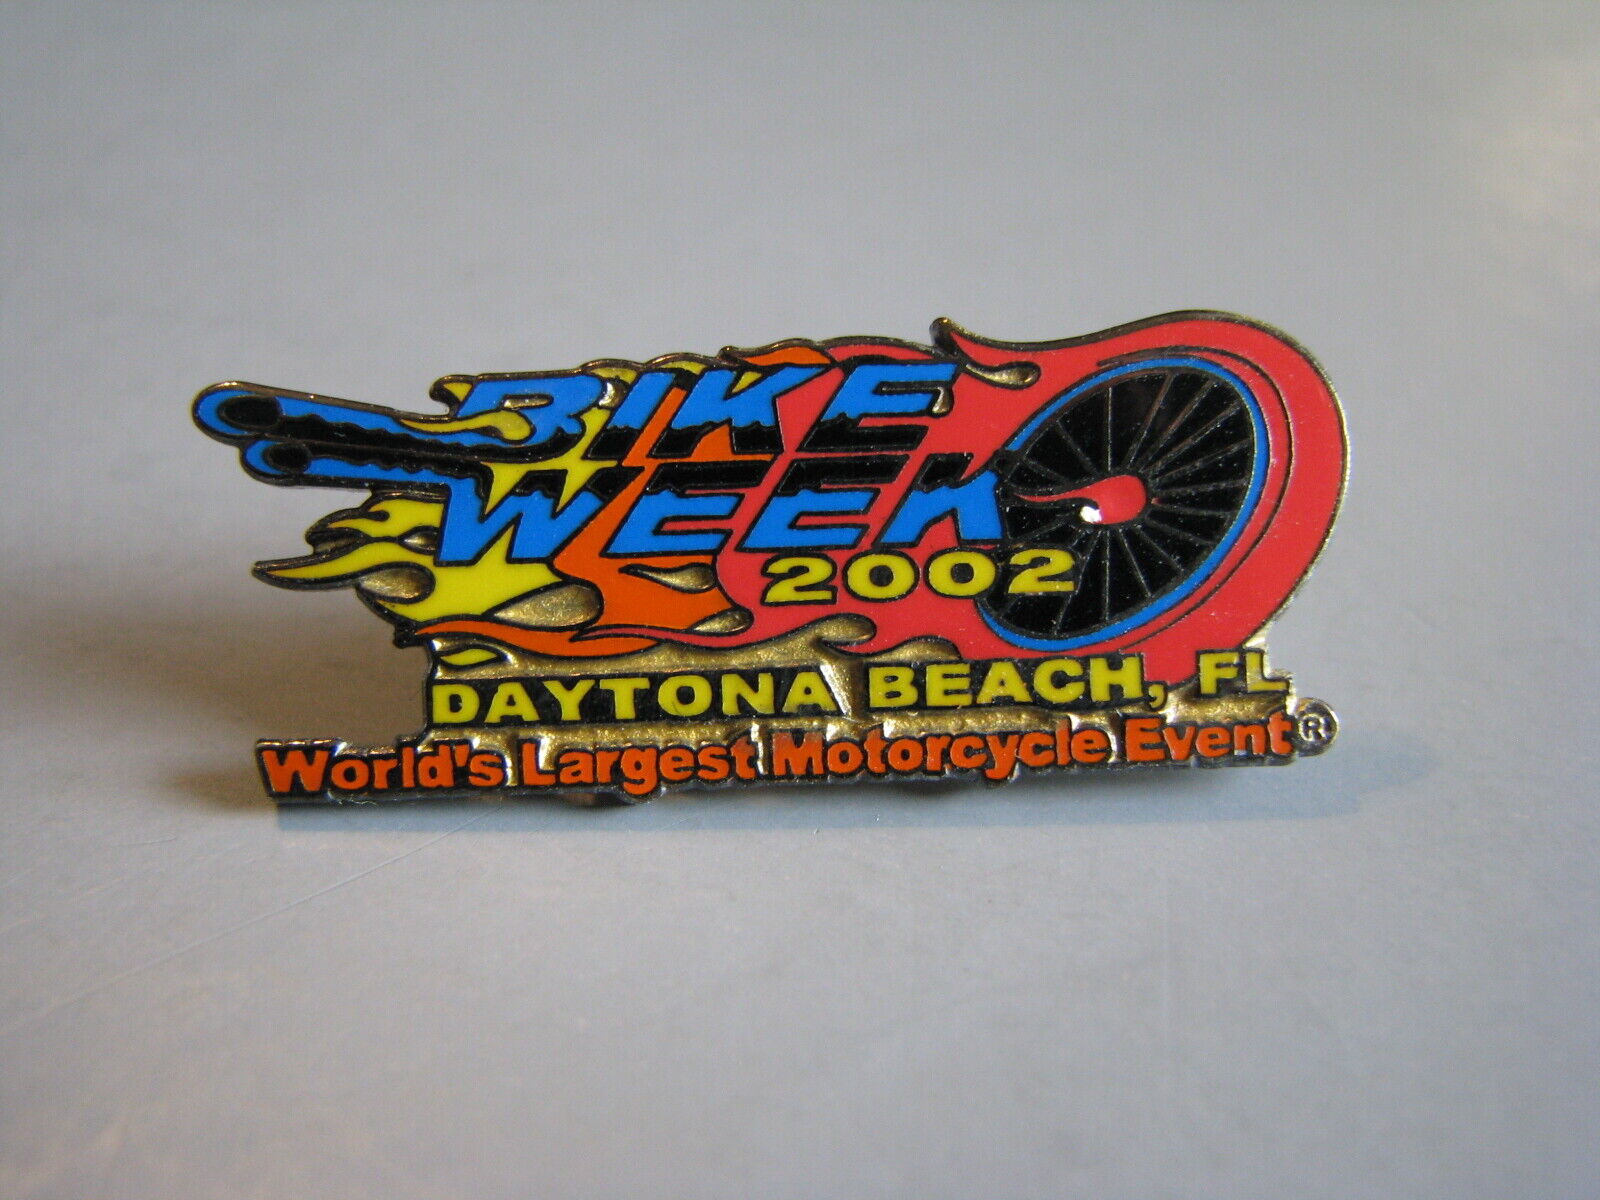 DAYTONA BIKE WEEK 2002 VERSION 2 DAYTONA BEACH FLORIDA MOTORCYCLE HAT PIN